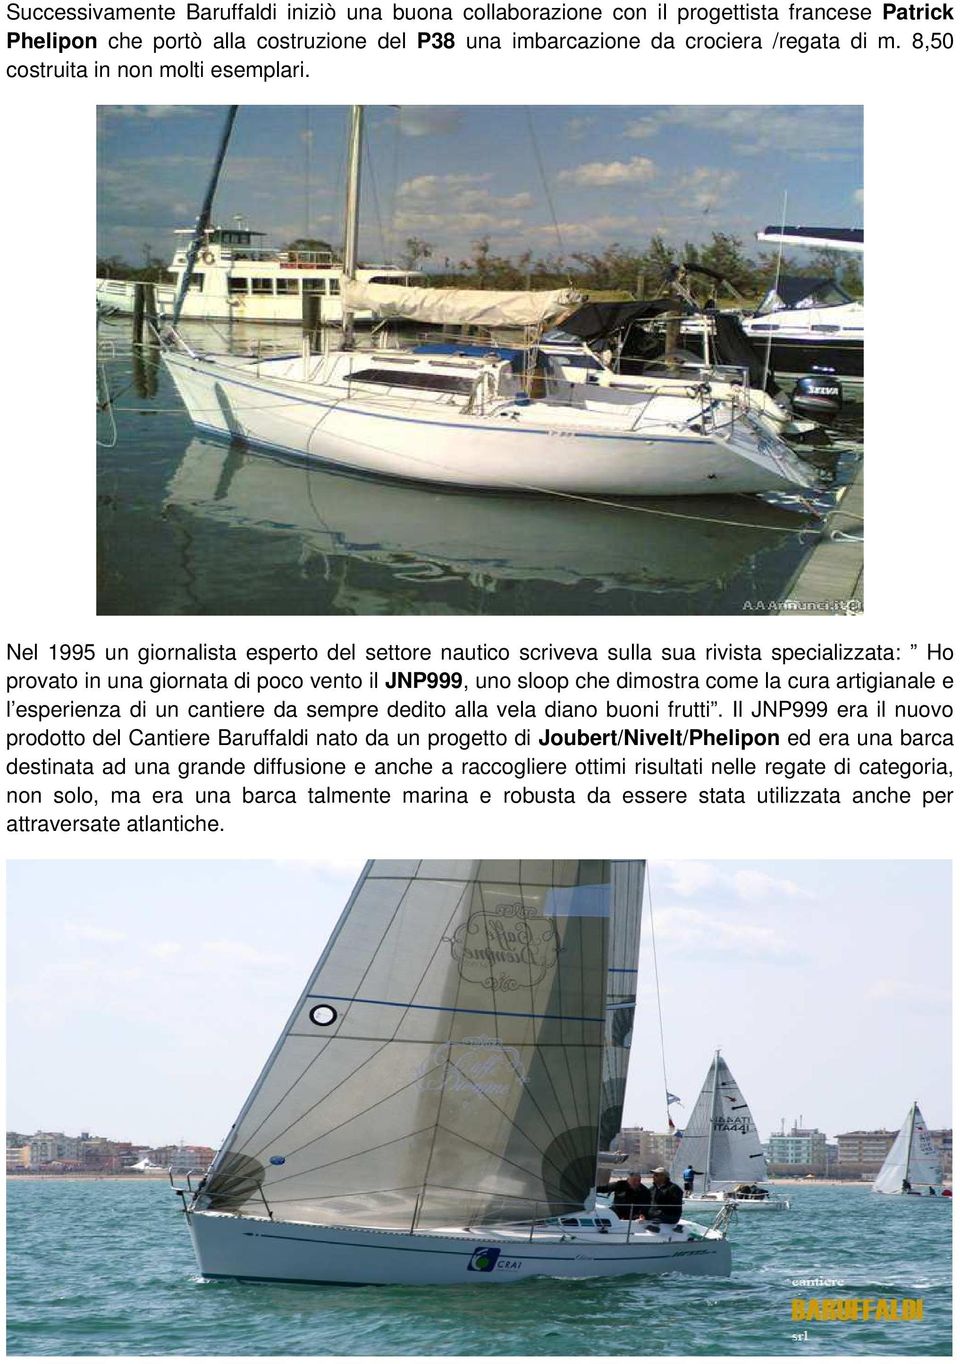 Nel 1995 un giornalista esperto del settore nautico scriveva sulla sua rivista specializzata: Ho provato in una giornata di poco vento il JNP999, uno sloop che dimostra come la cura artigianale e l